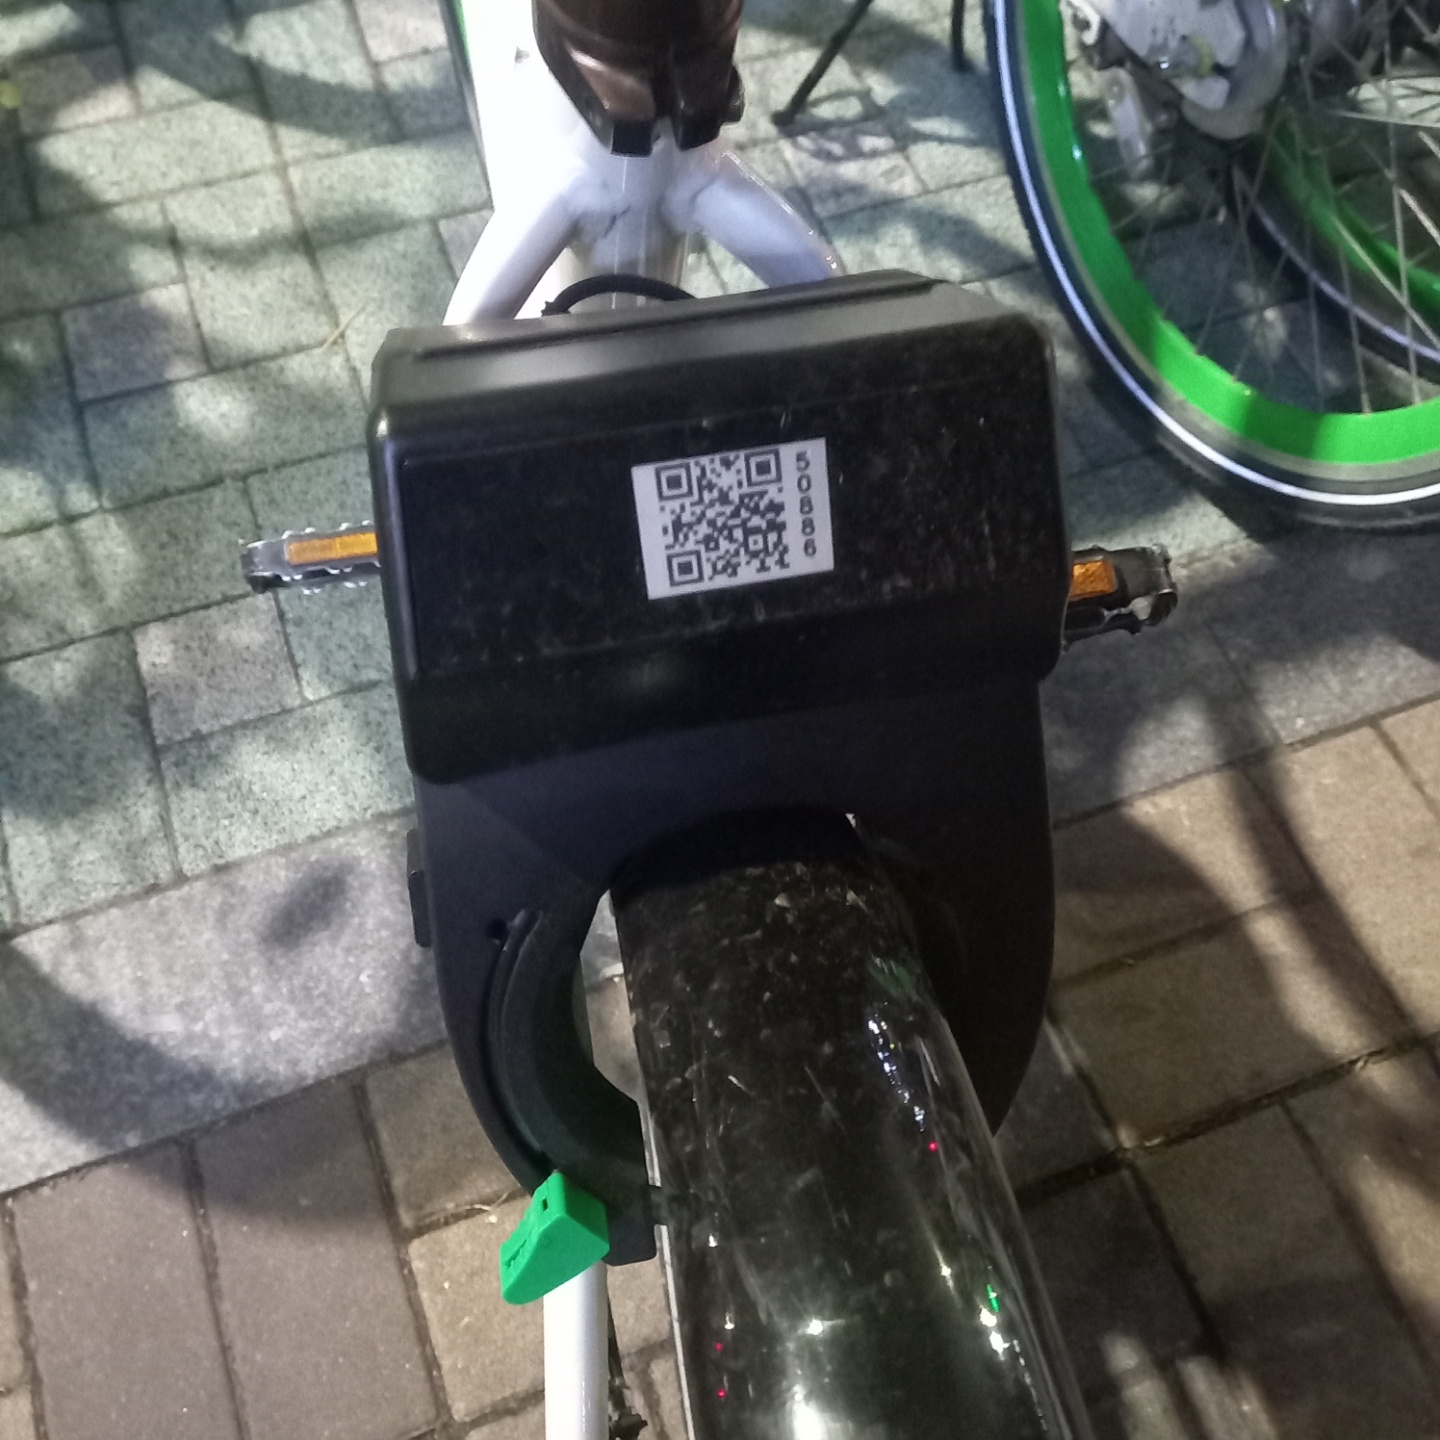 서울시 자전거 따릉이 이용방법 및 가격